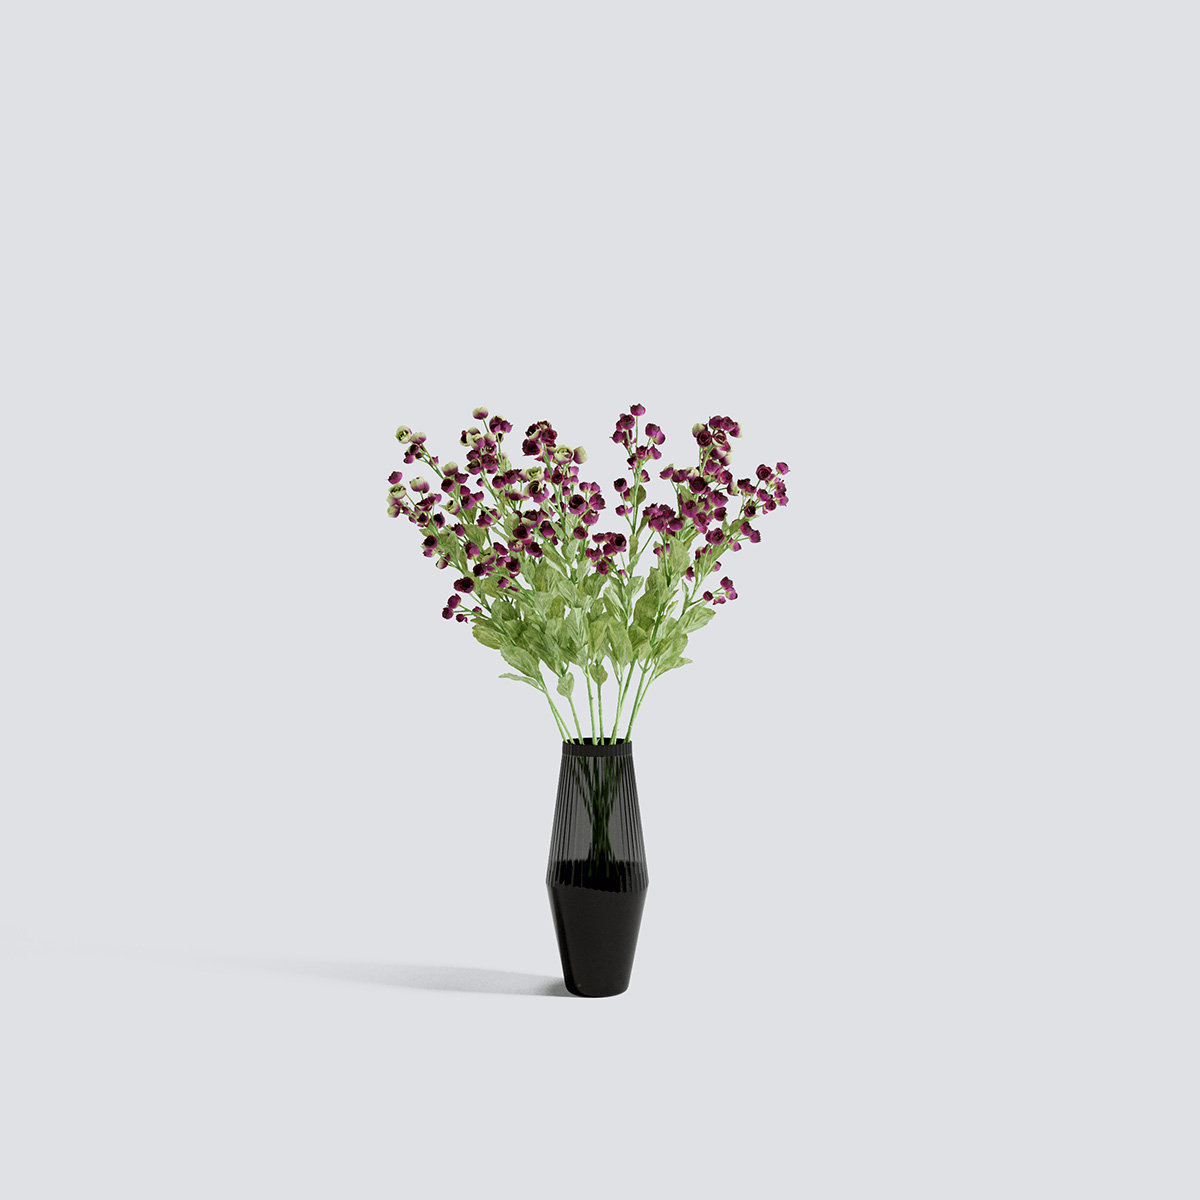 مدل سه بعدی گل و گیاهان آپارتمانی - 7